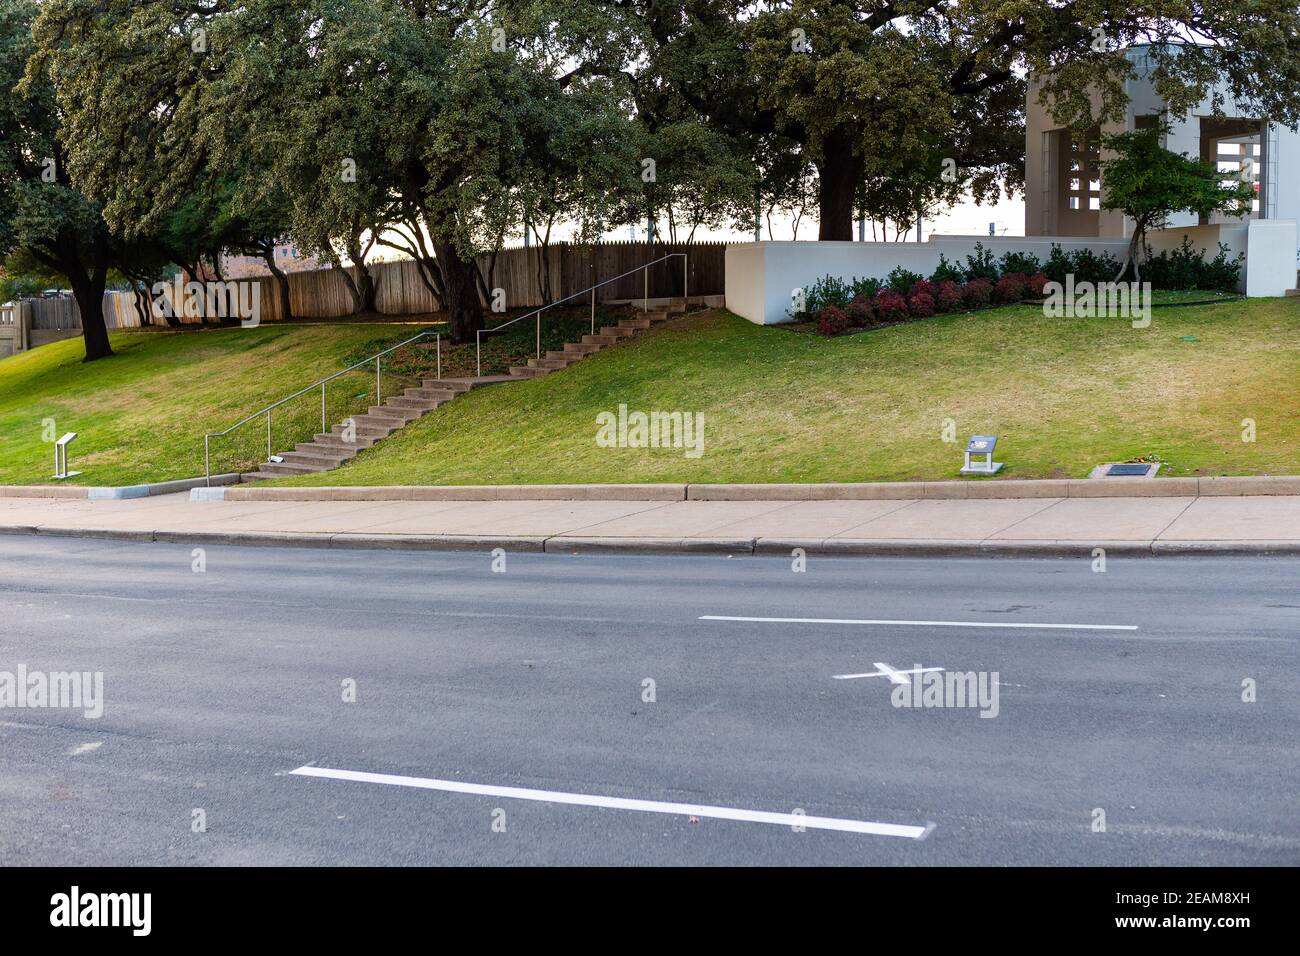 Elm Street, knoll herbacé et clôture de piquetage en bordure de Dealey Plaza, Dallas, Texas Banque D'Images